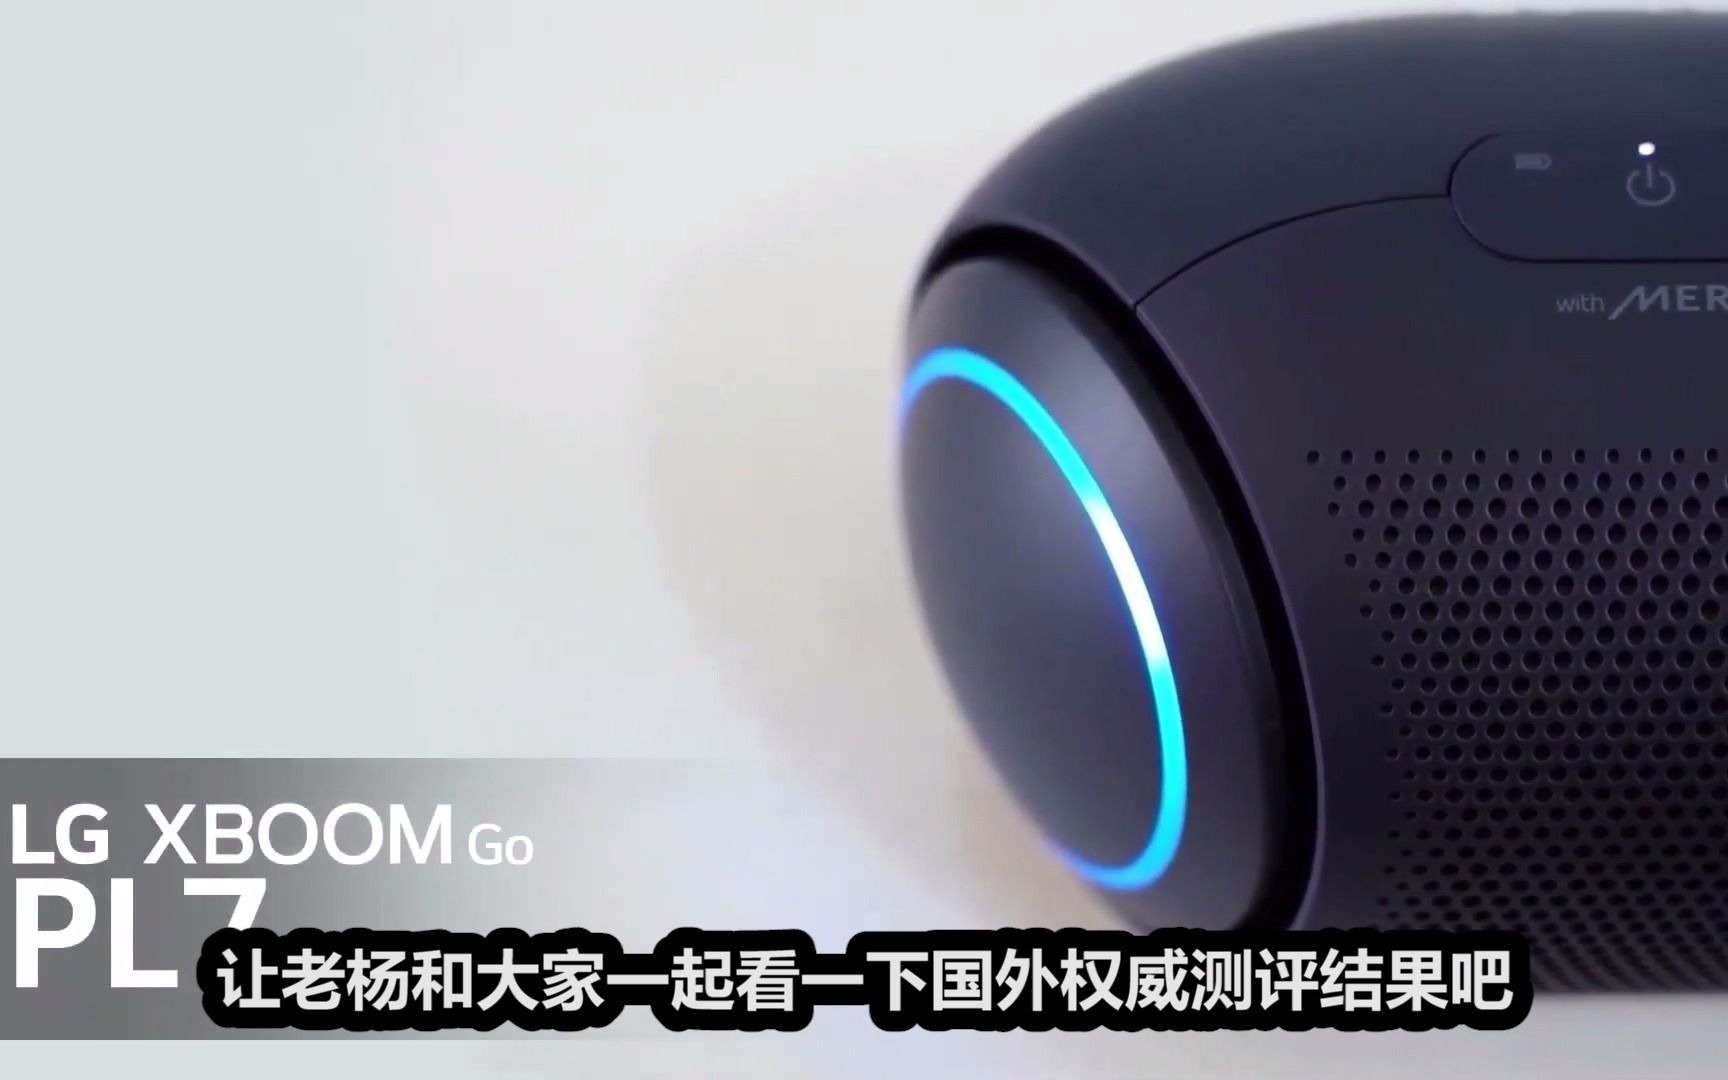 CES2021中，LG的新款XBOOM Go PL便携智能蓝牙音箱真的那么强么？